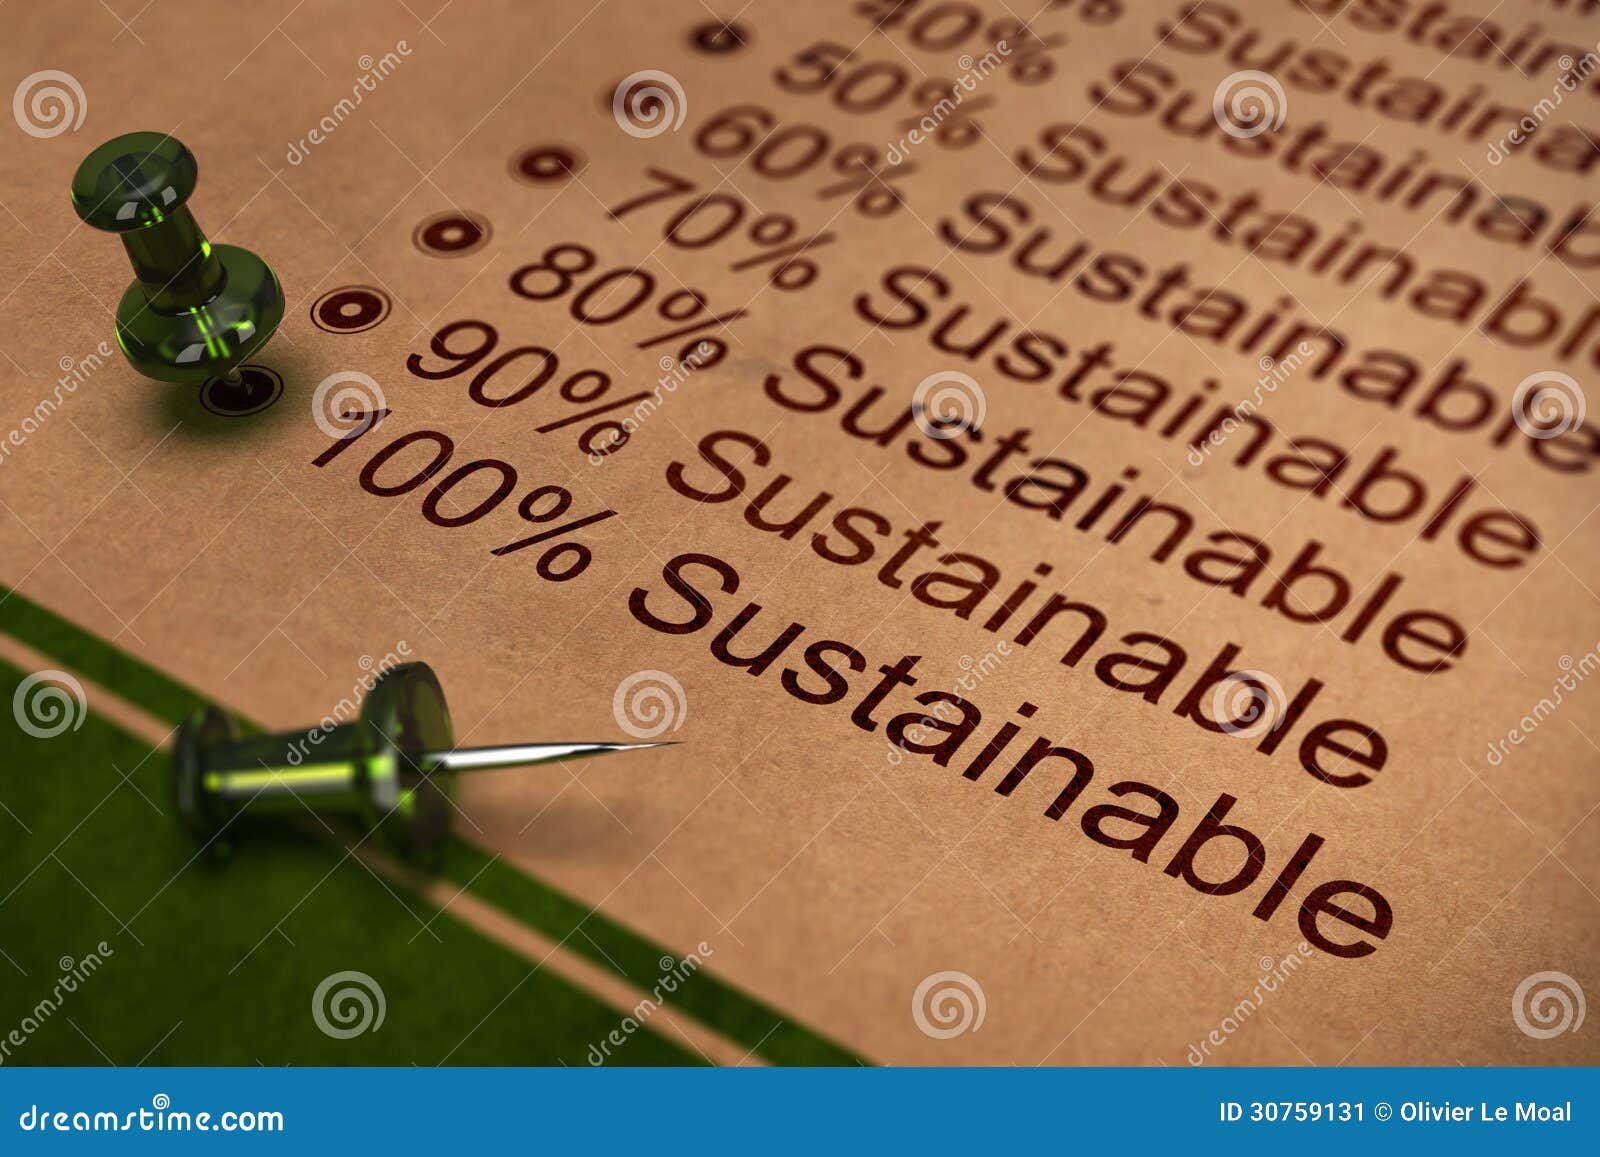 fully sustainable, improving sustainability